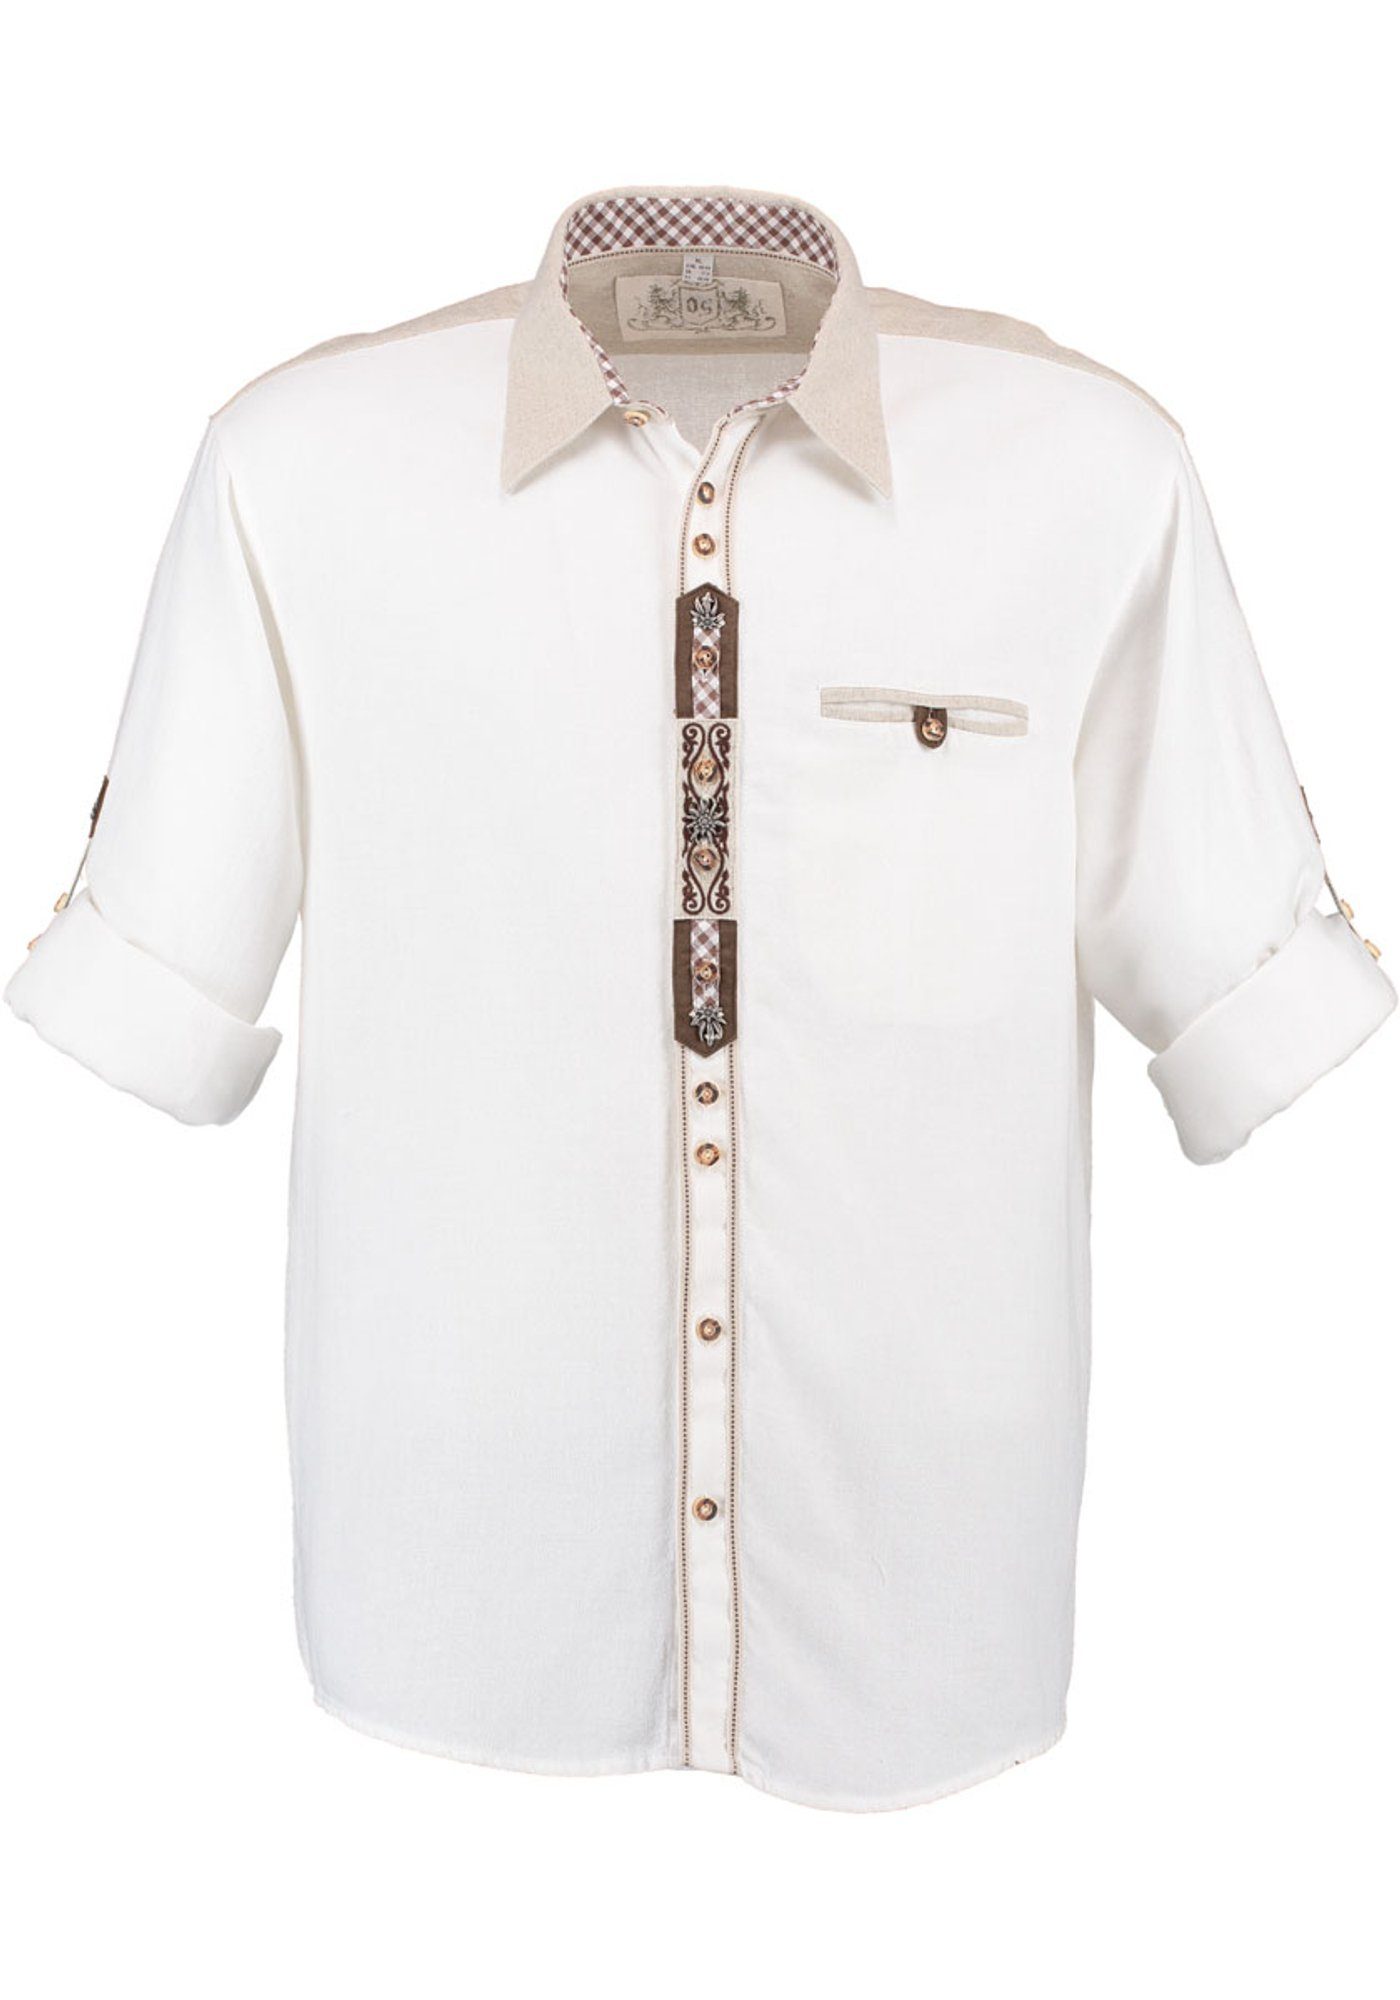 OS-Trachten der Trachtenhemd Etuji mit Stickerei auf Knopfleiste Herren Langarmhemd